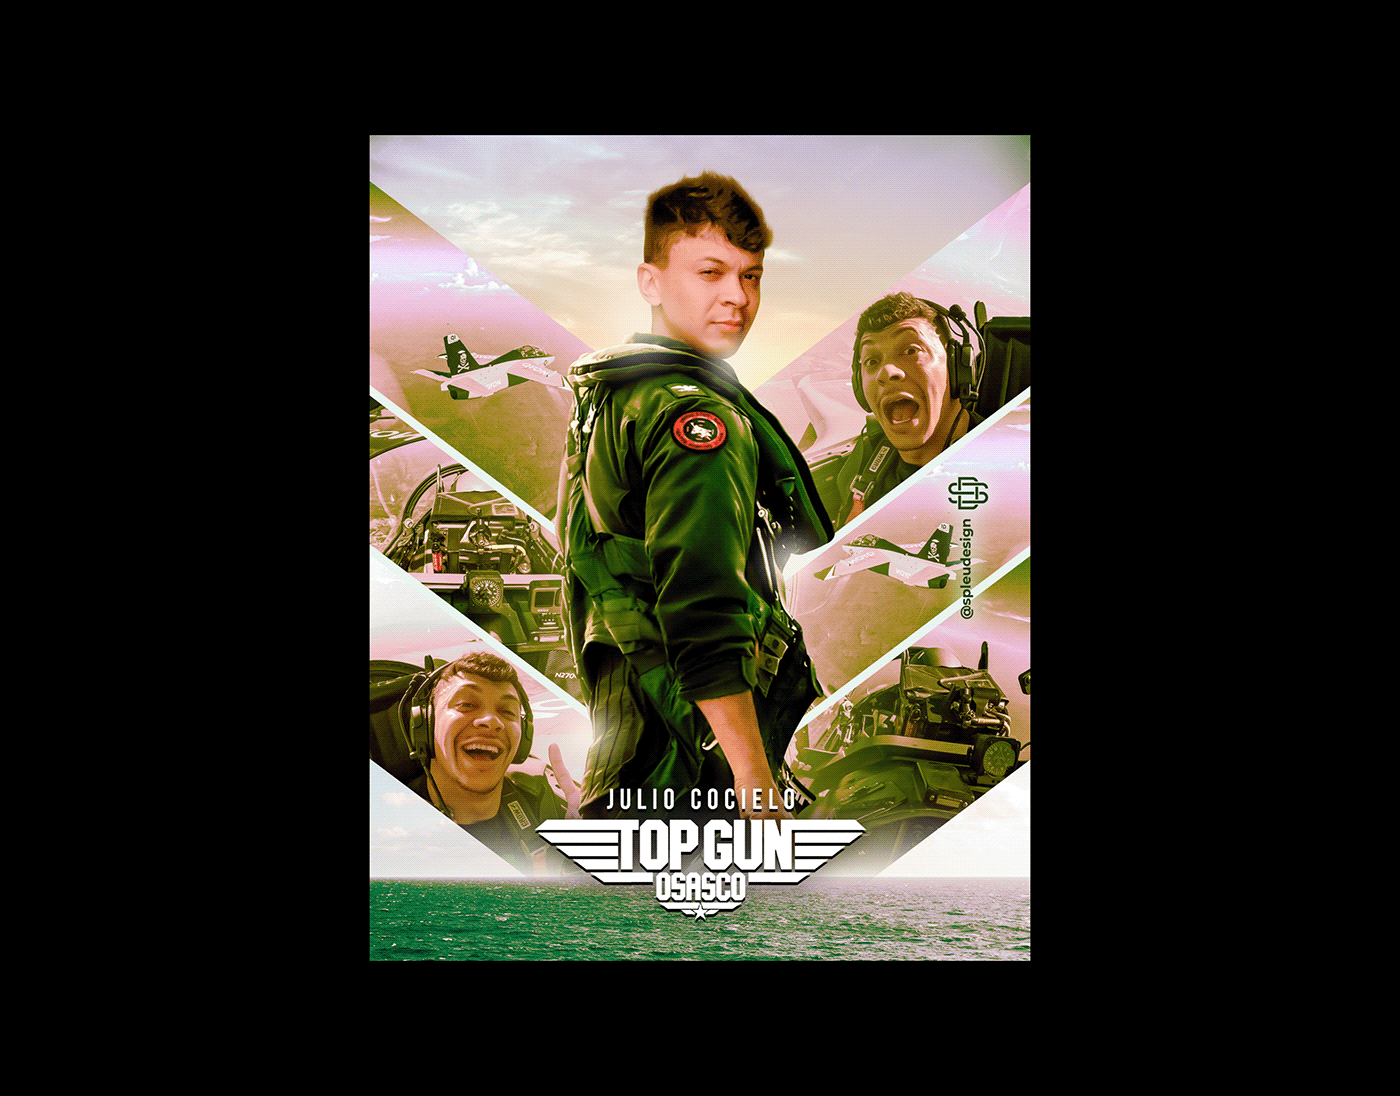 artwork cocielo design julio cocielo osasco photoshop poster Top Gun topGun youtube